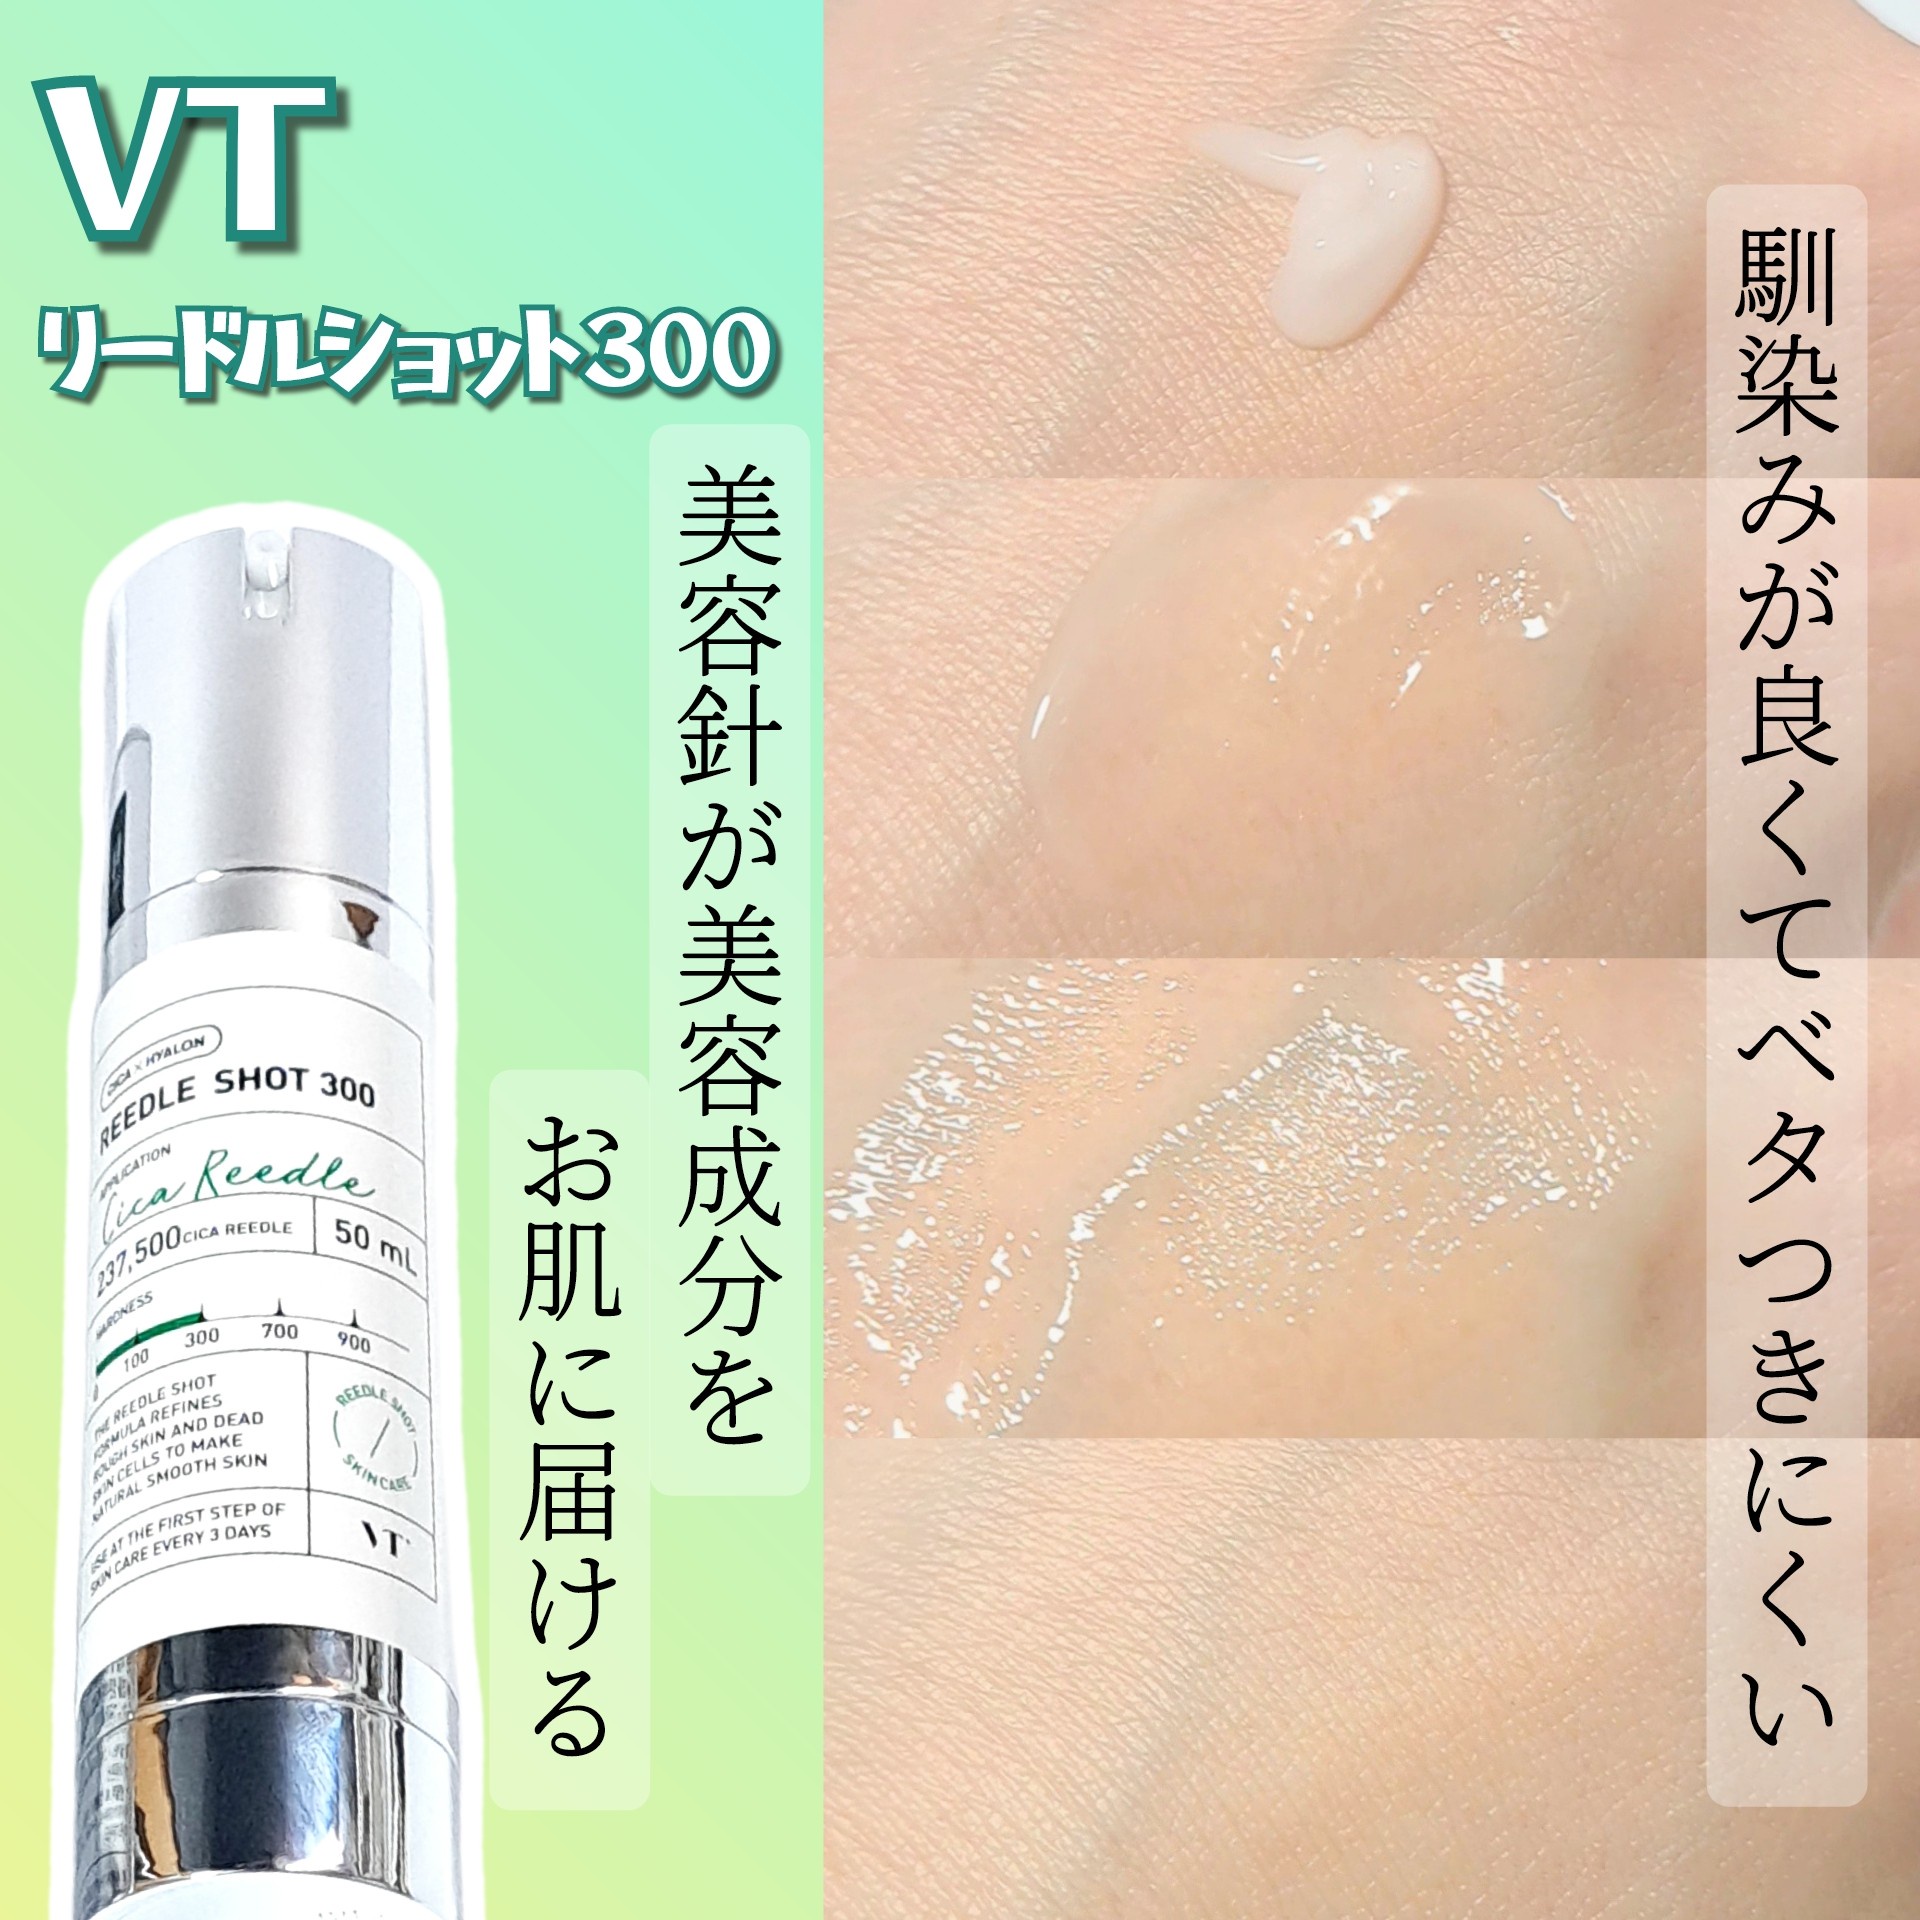 VT リードルS300 50ml - 美容液